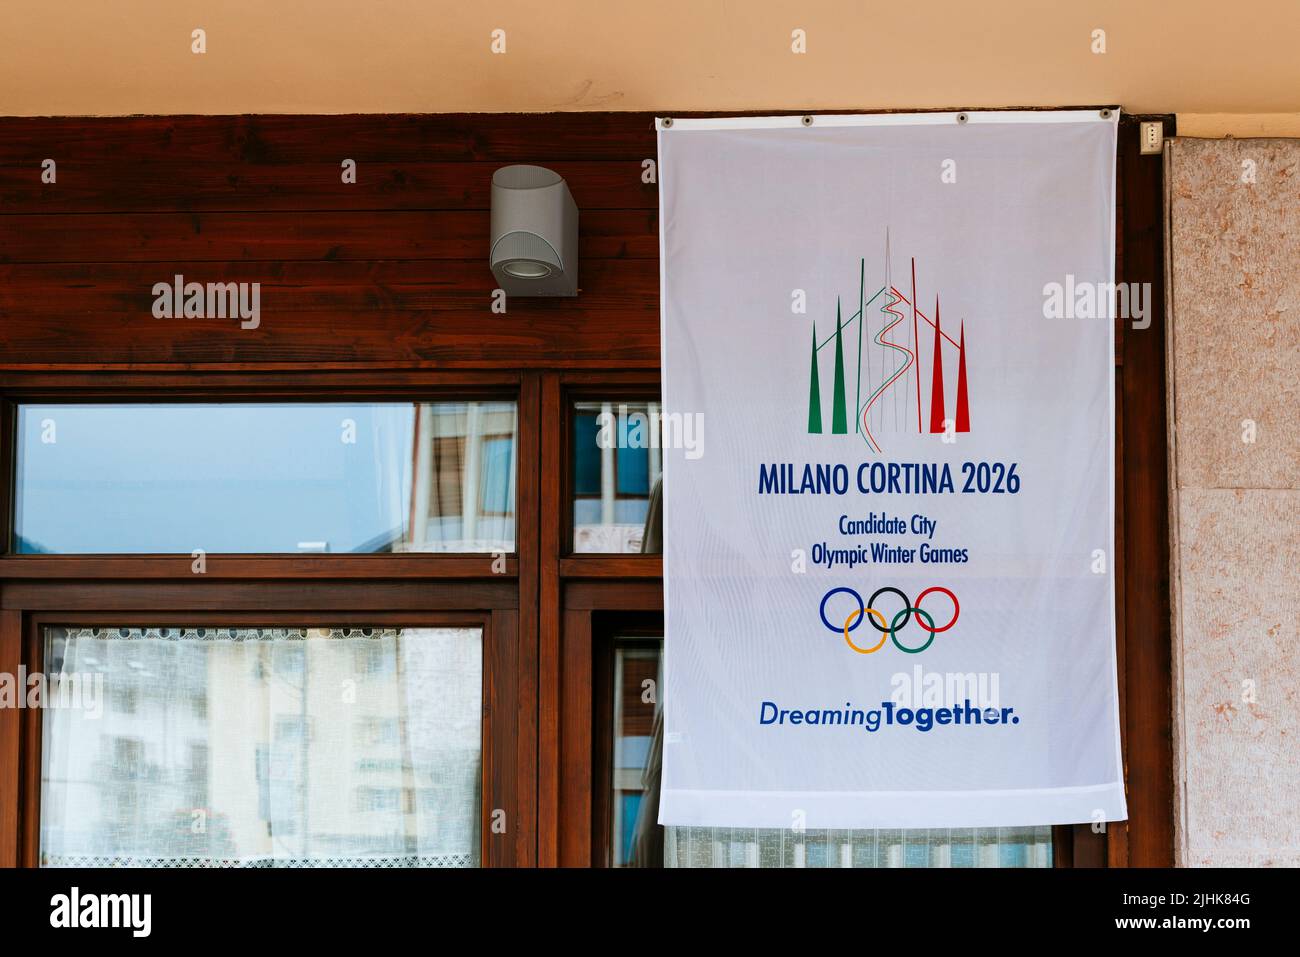 Bandiera di Milano - Cortina 2026, candidata City Olimpics Winter Games. Sognare Toguether. Cortina d'Ampezzo, Provincia di Belluno, Veneto, Italia, Europa Foto Stock